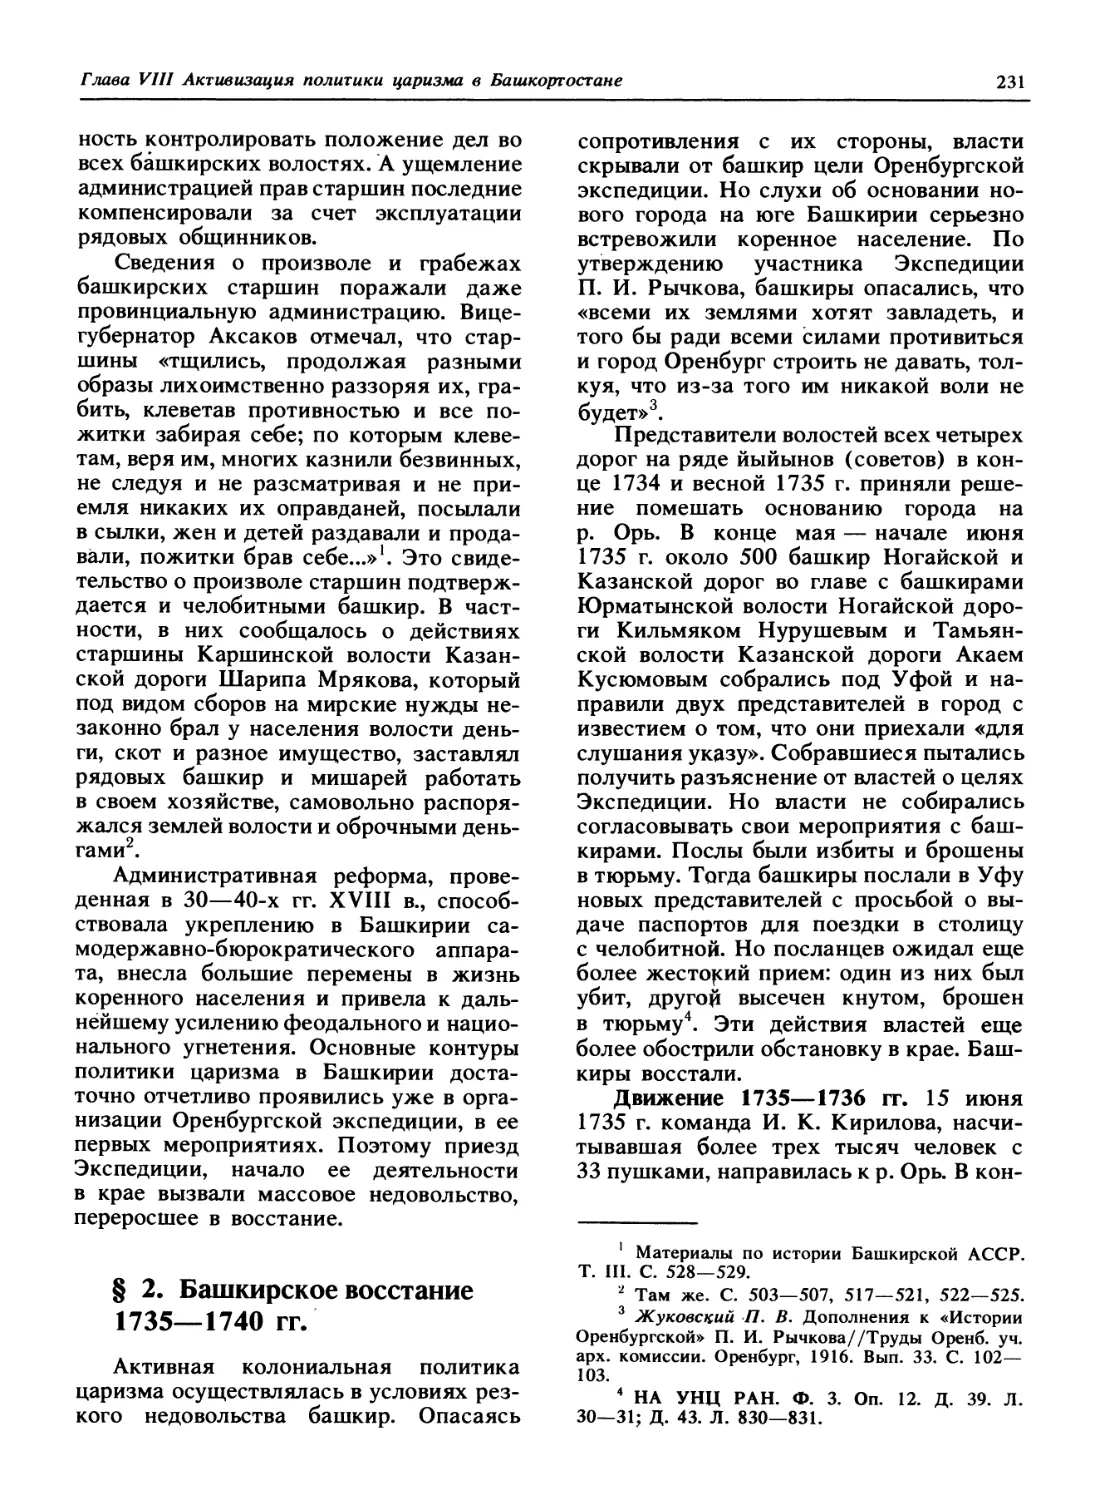 § 2. Башкирское восстание 1735 - 1740 гг.